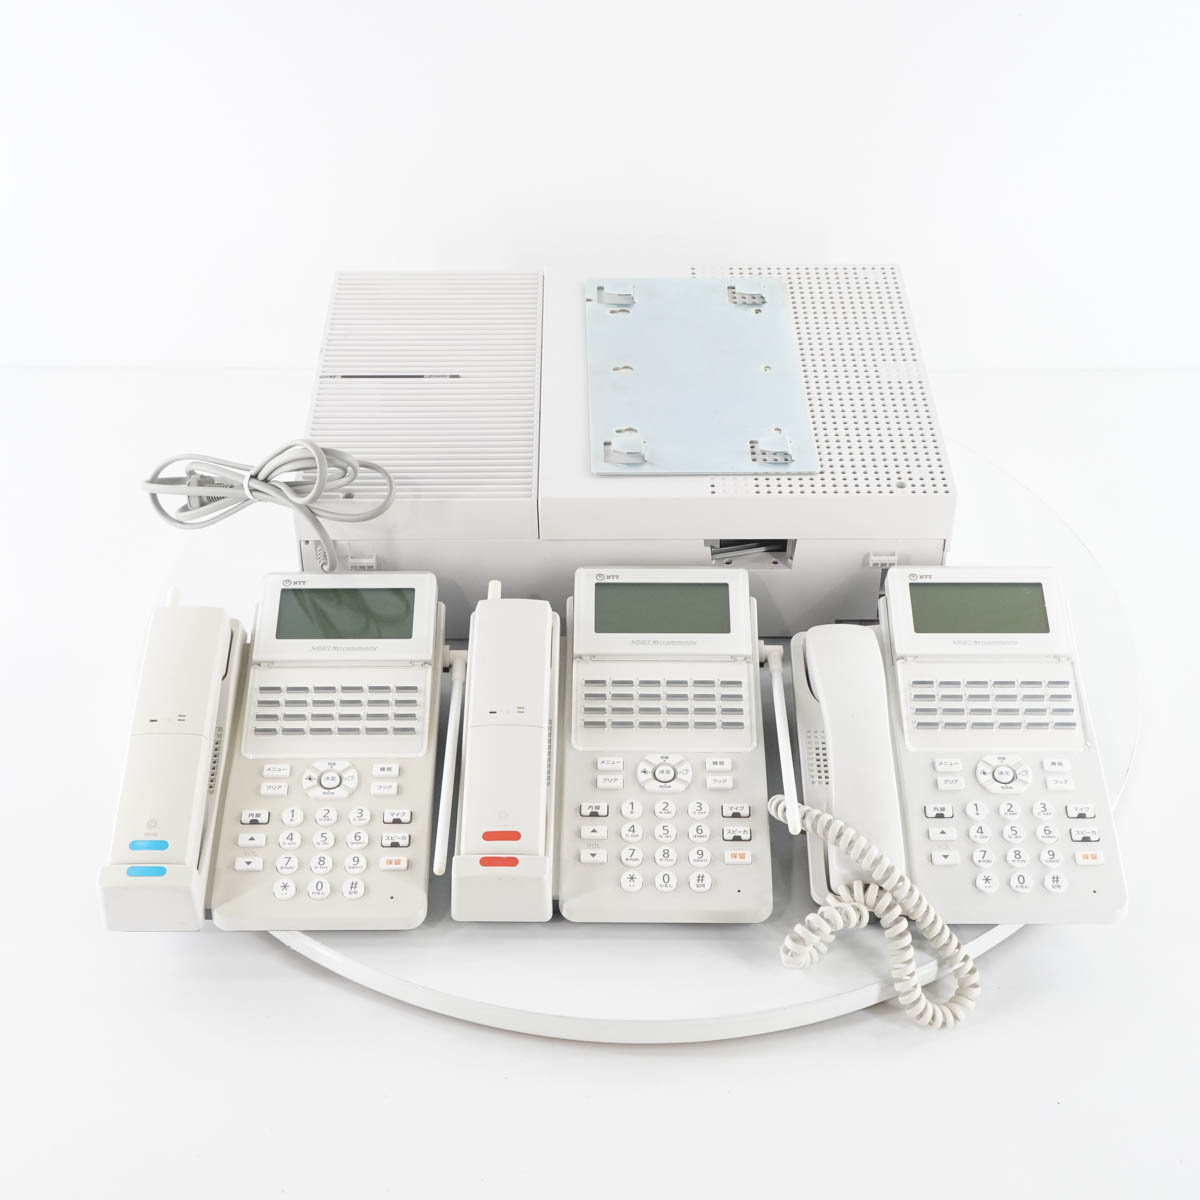 br>[PG]8日保証 セット 21年製 NTT αZX ZXS-ME-(1) 主装置 電話機 